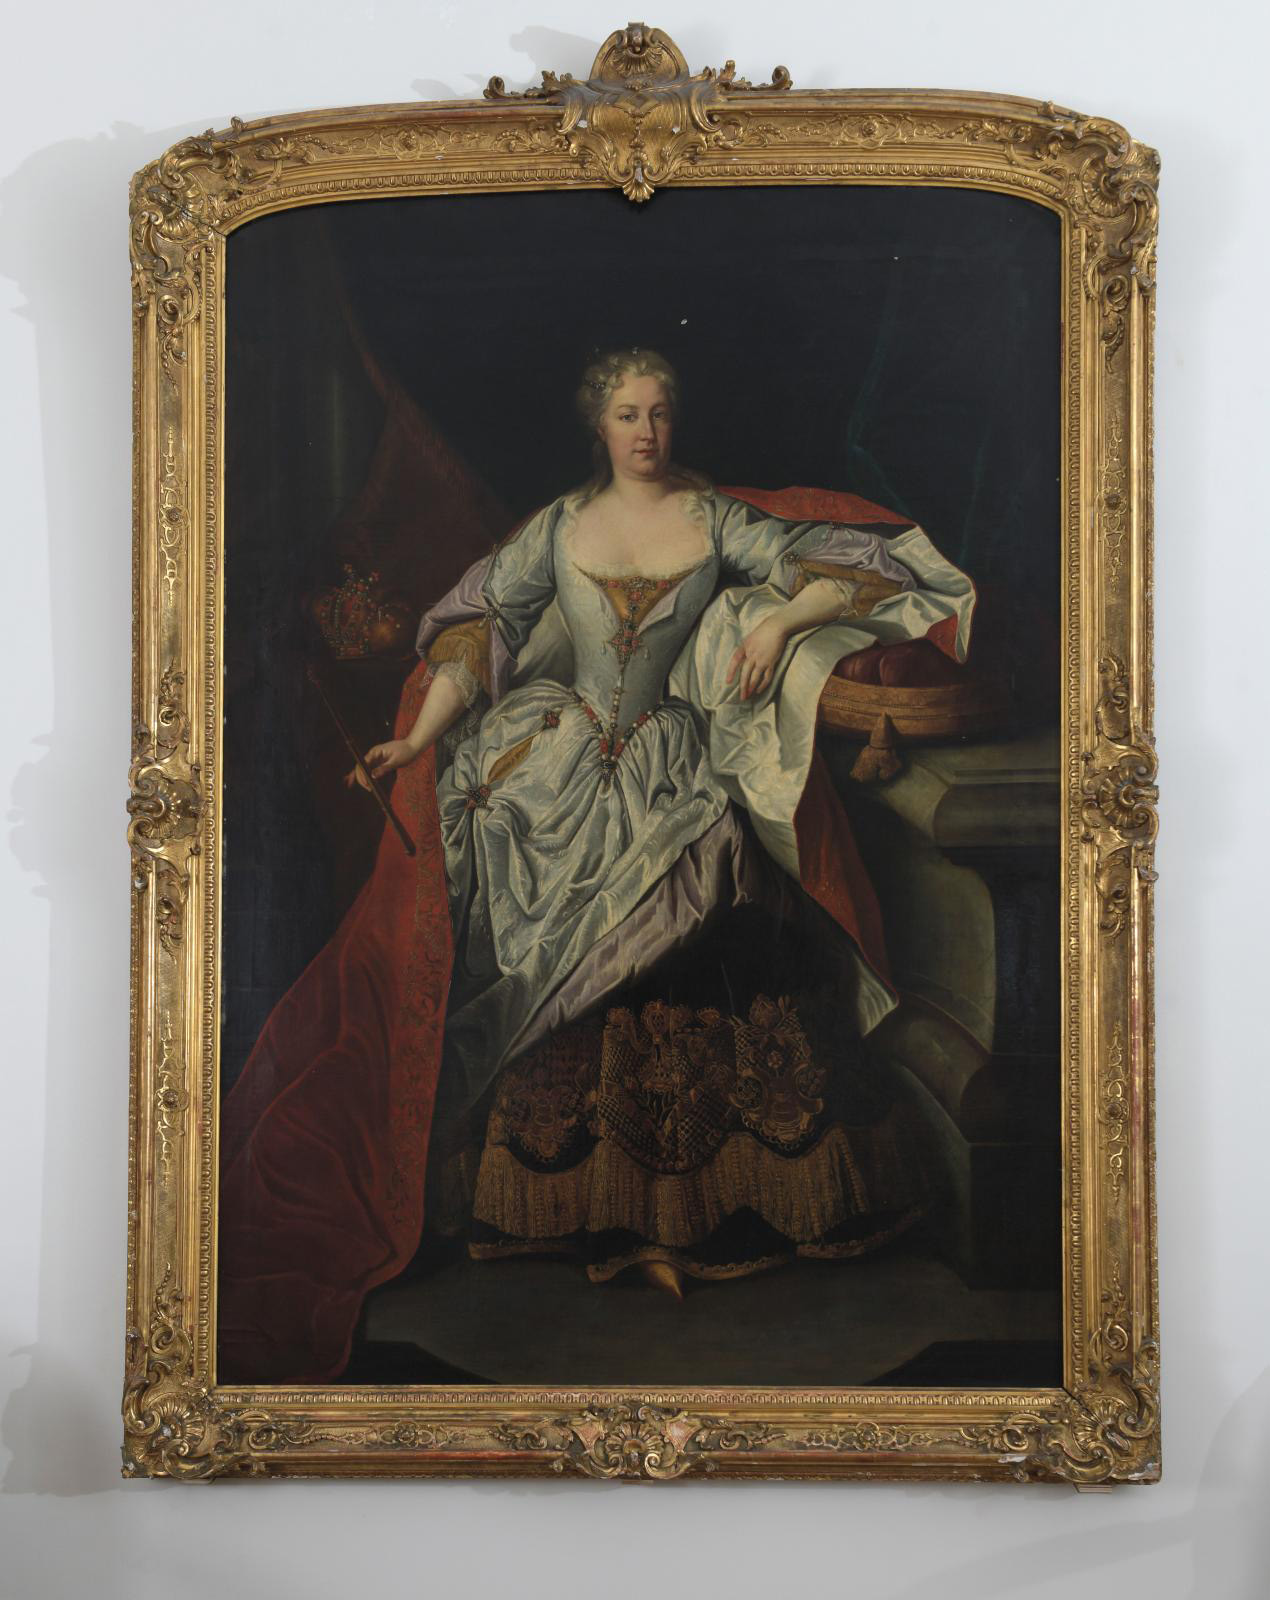 18th century Austrian school, attributed to Martin Van Meytens (1695-1770), Portrait of Empress Elisabeth-Christine of Brunswick-Wolfenbüt